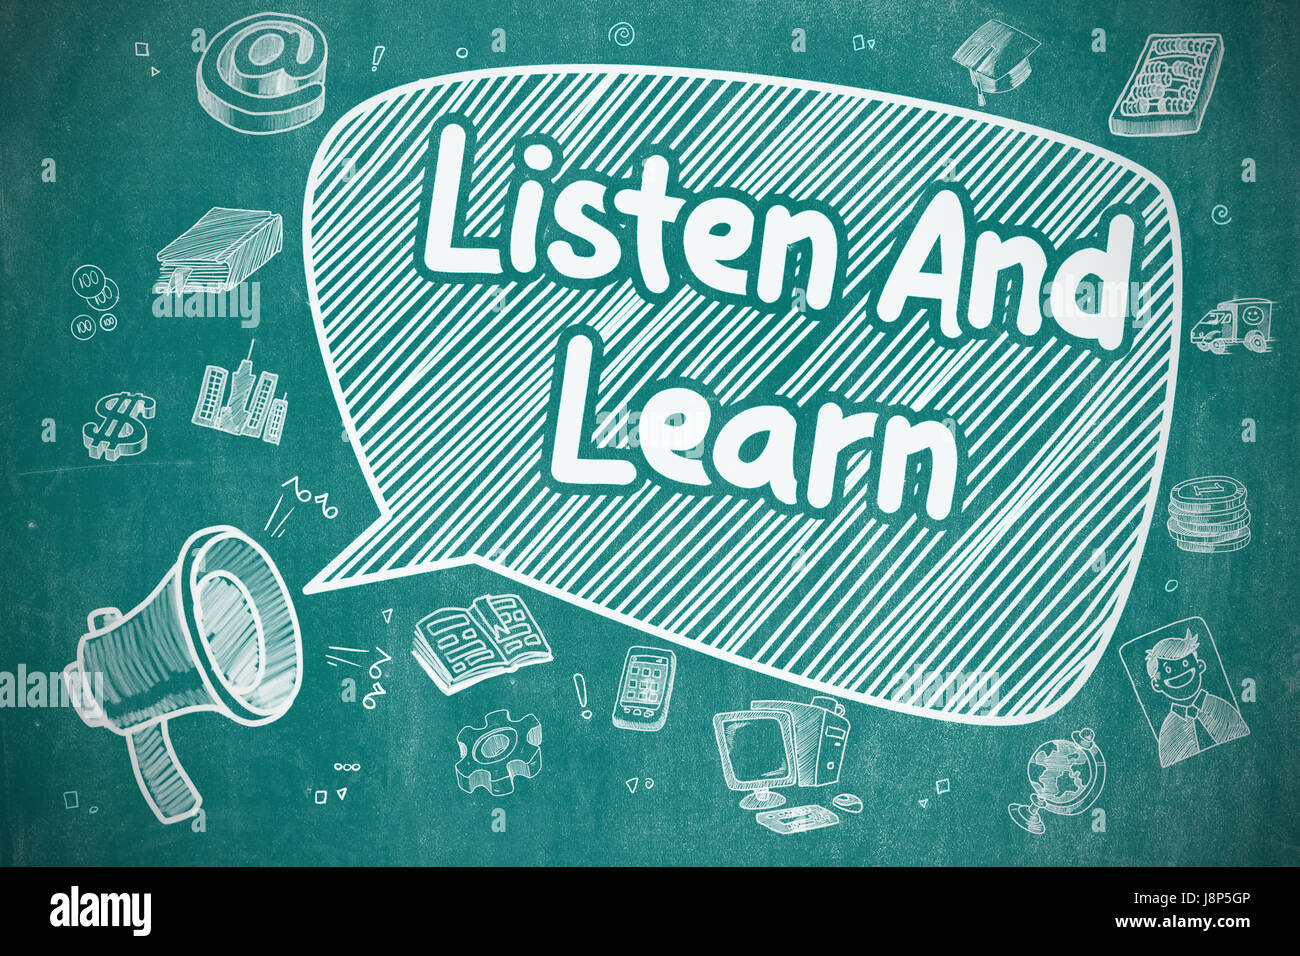 Listen And Learn - Cartoon Illustration on Blue Chalkboard. Stock Photo